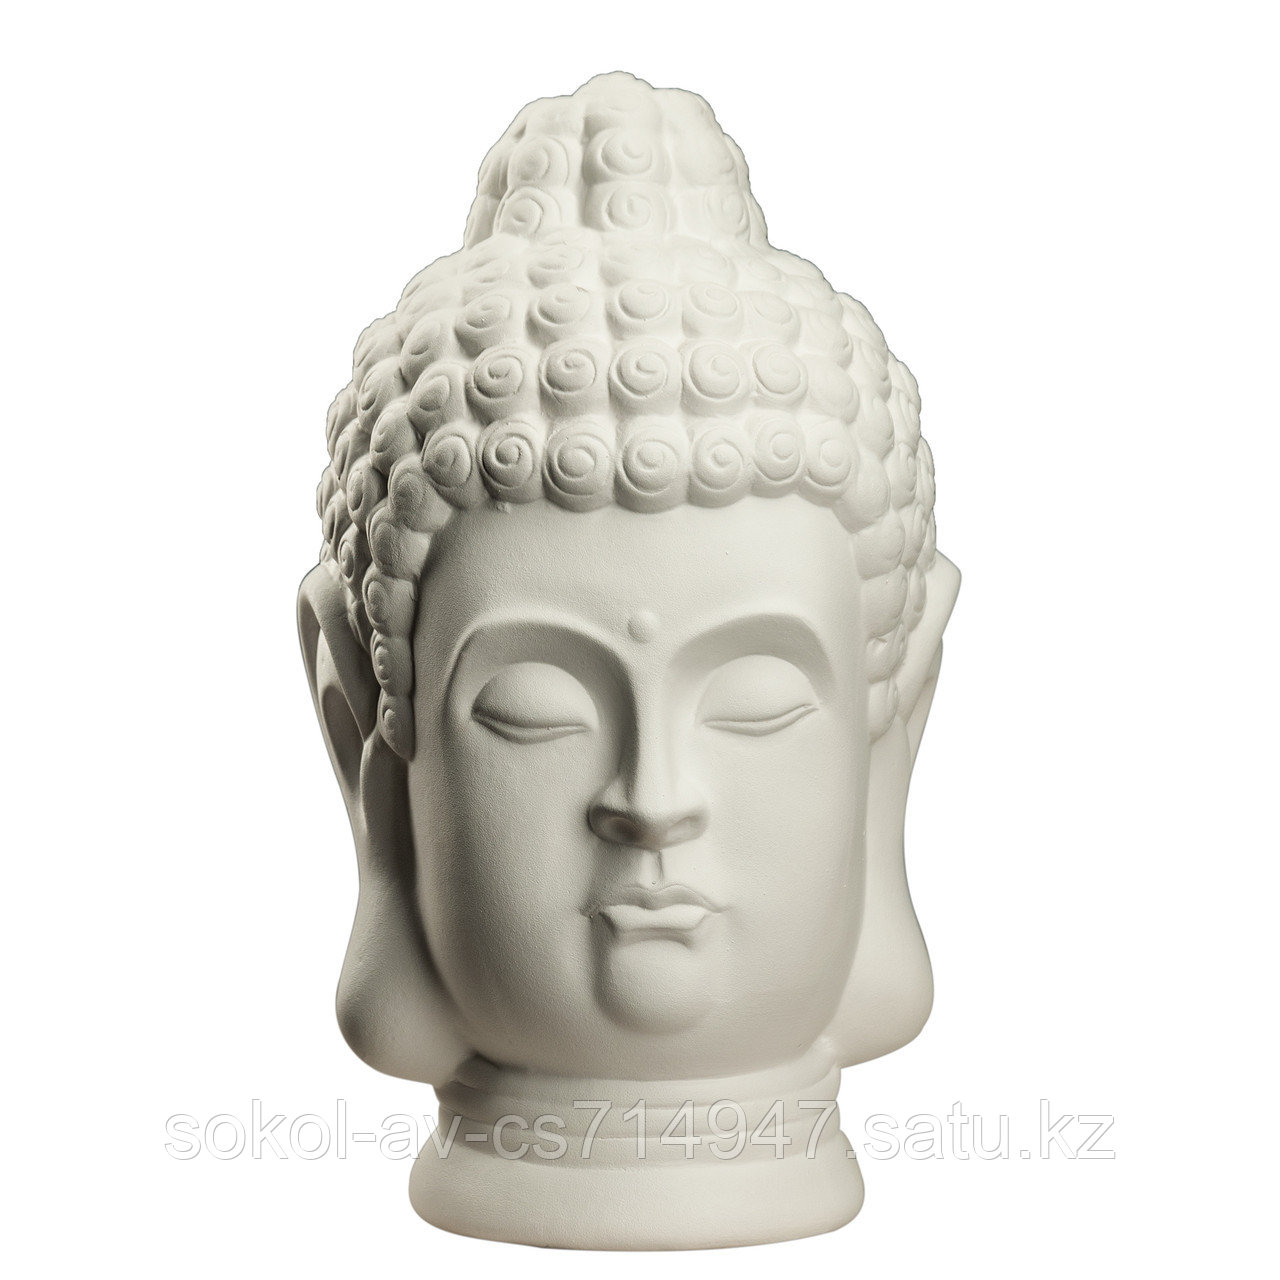 Статуэтка Будда The Buddha, подарок буддисту, керамика, 31*19*19 см, белый